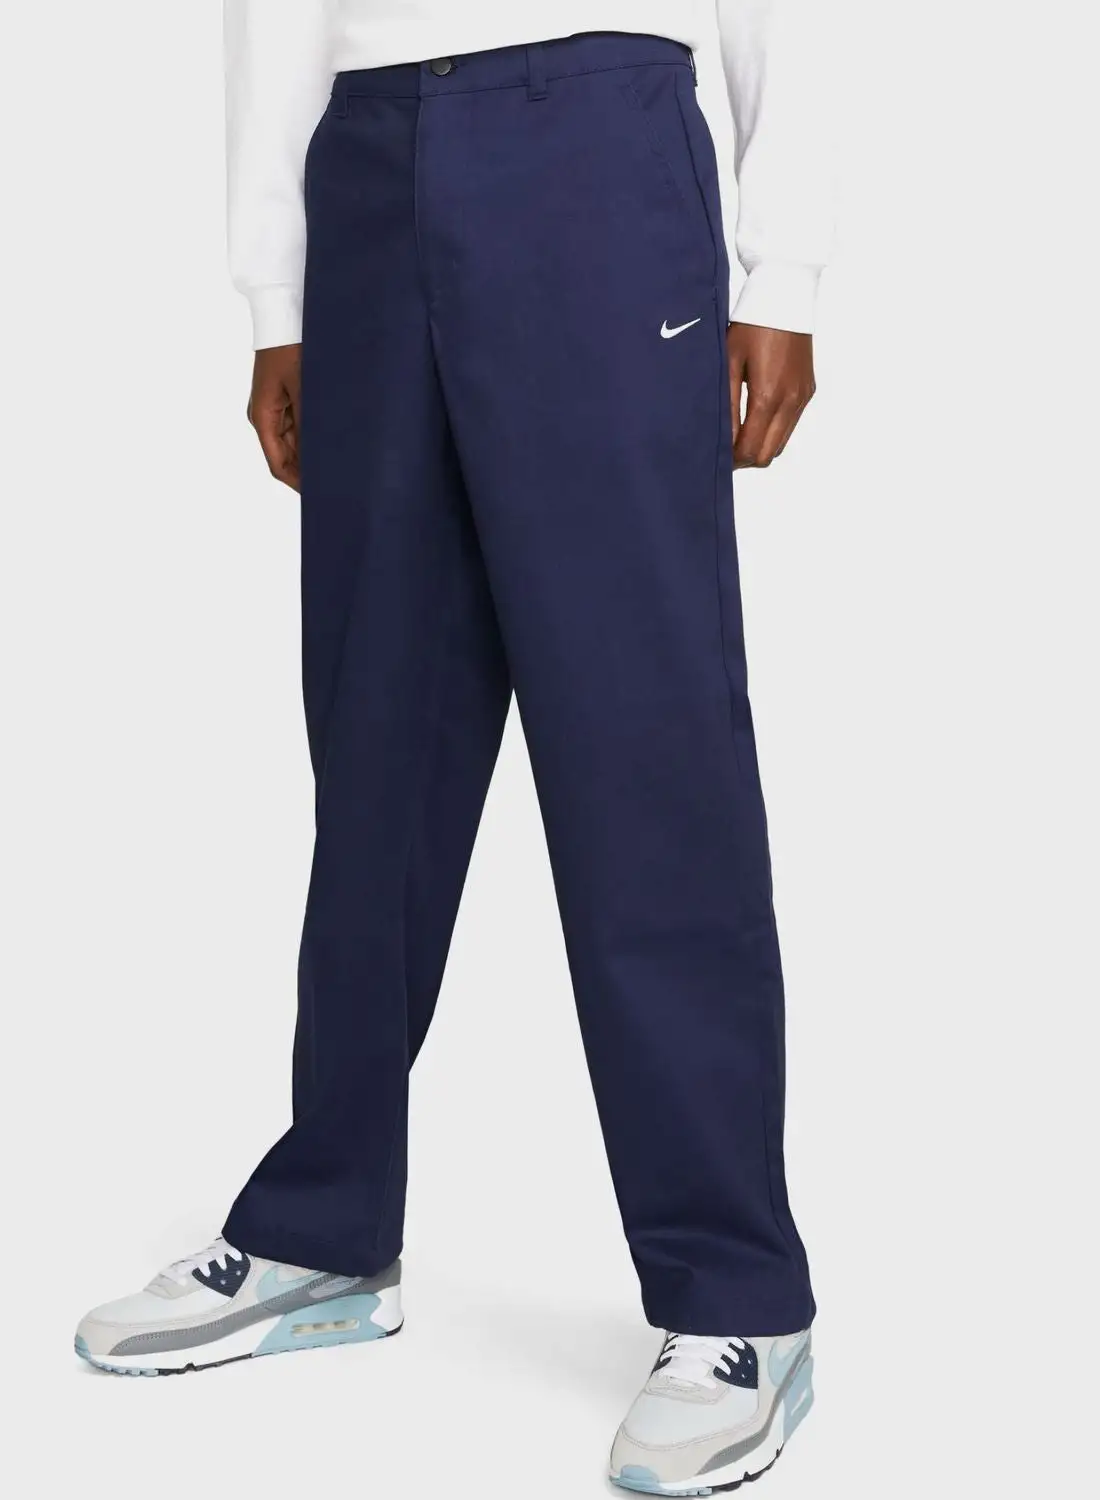 Nike Essential Chino Pants